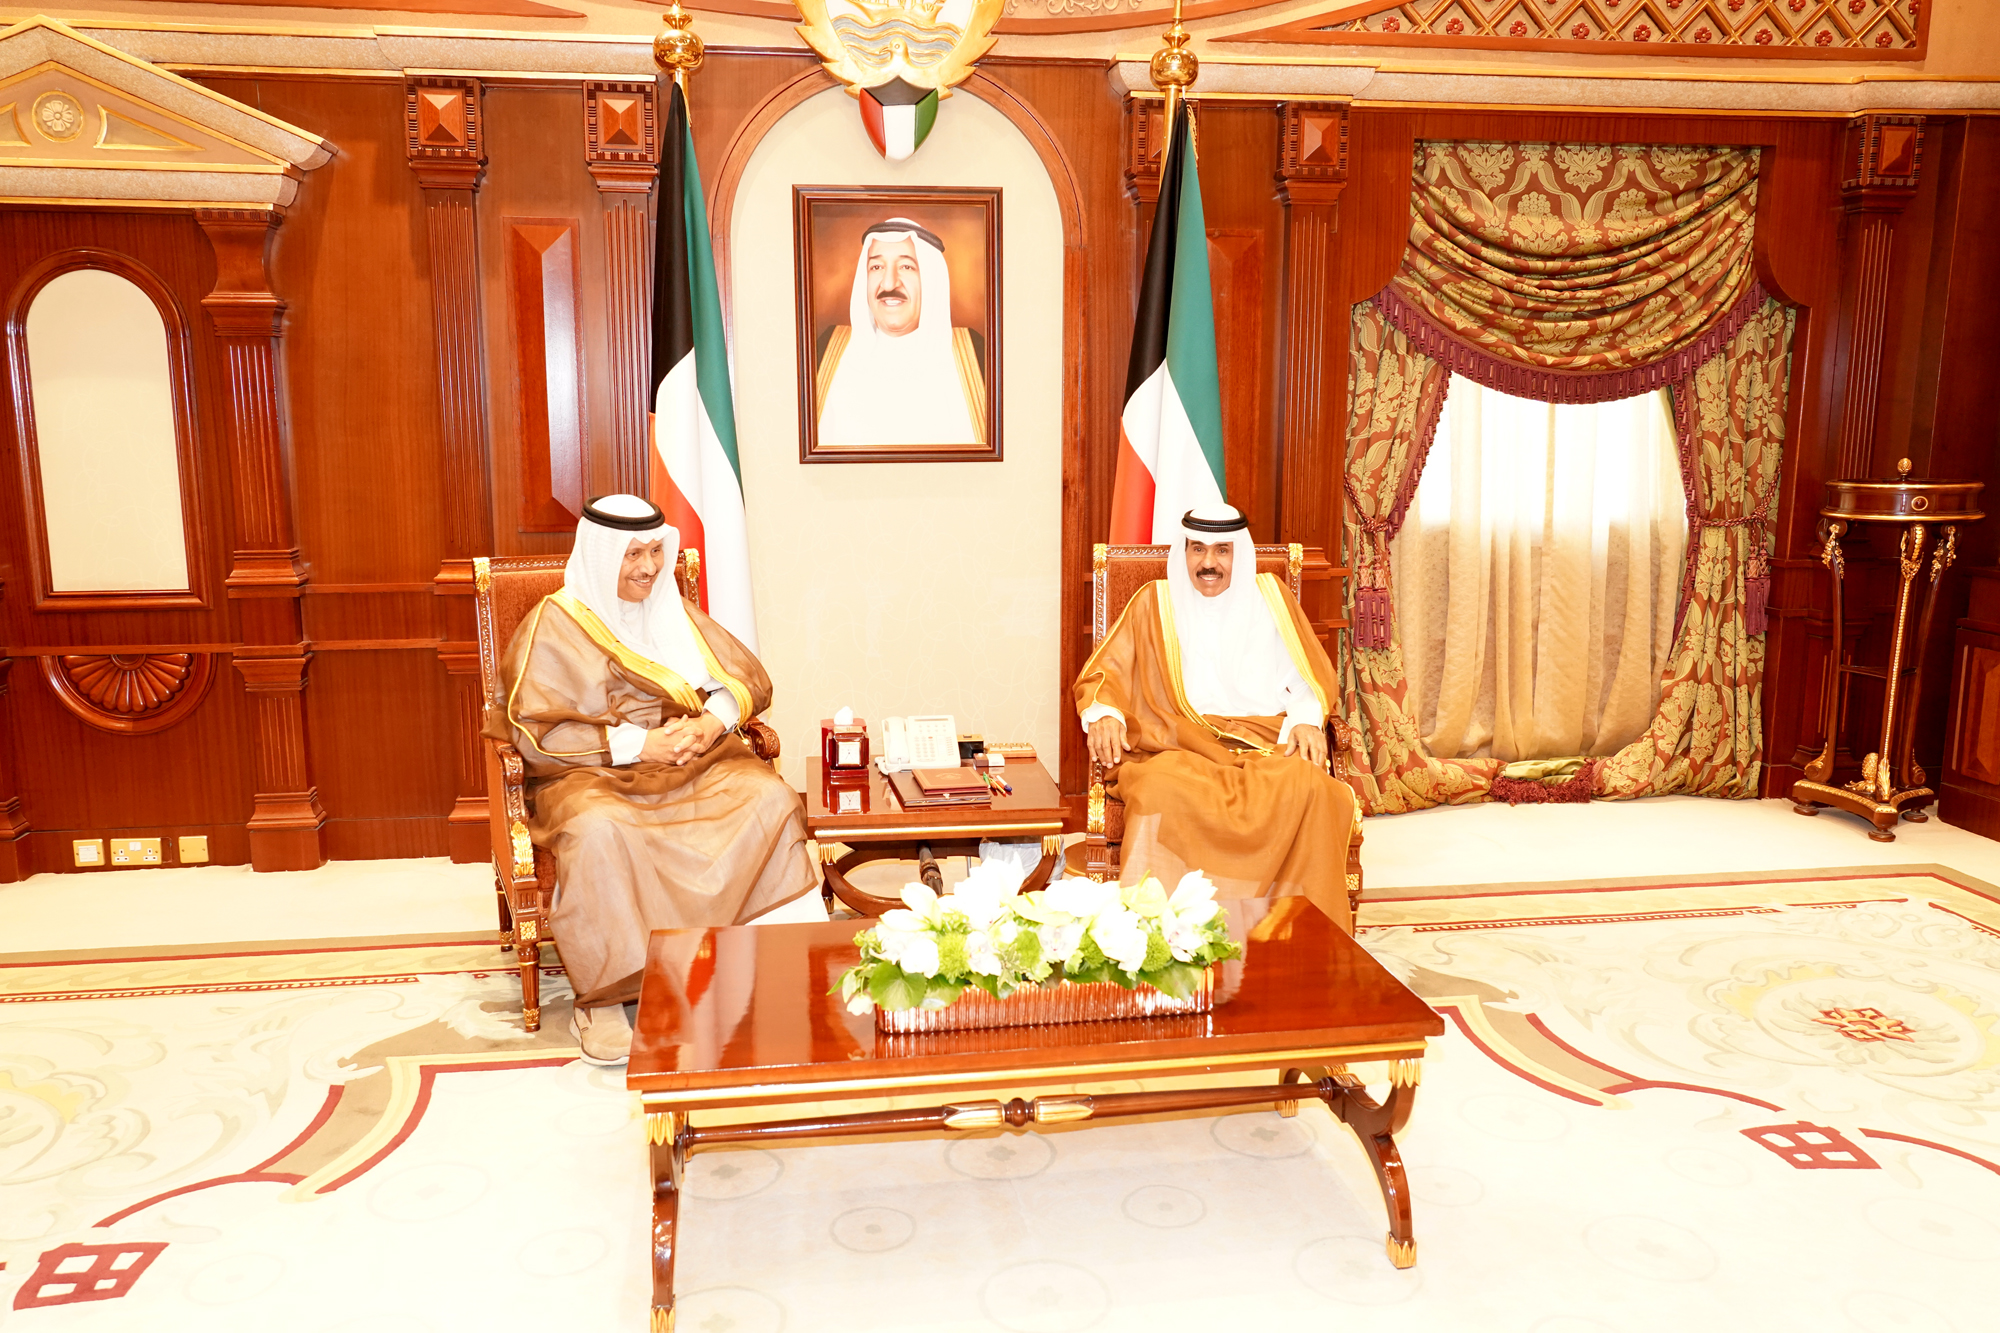 His Highness the Crown Prince Sheikh Nawaf Al-Ahmad Al-Jaber Al-Sabah received the Prime Minister Sheikh Jaber Al-Mubarak Al-Hamad Al-Sabah